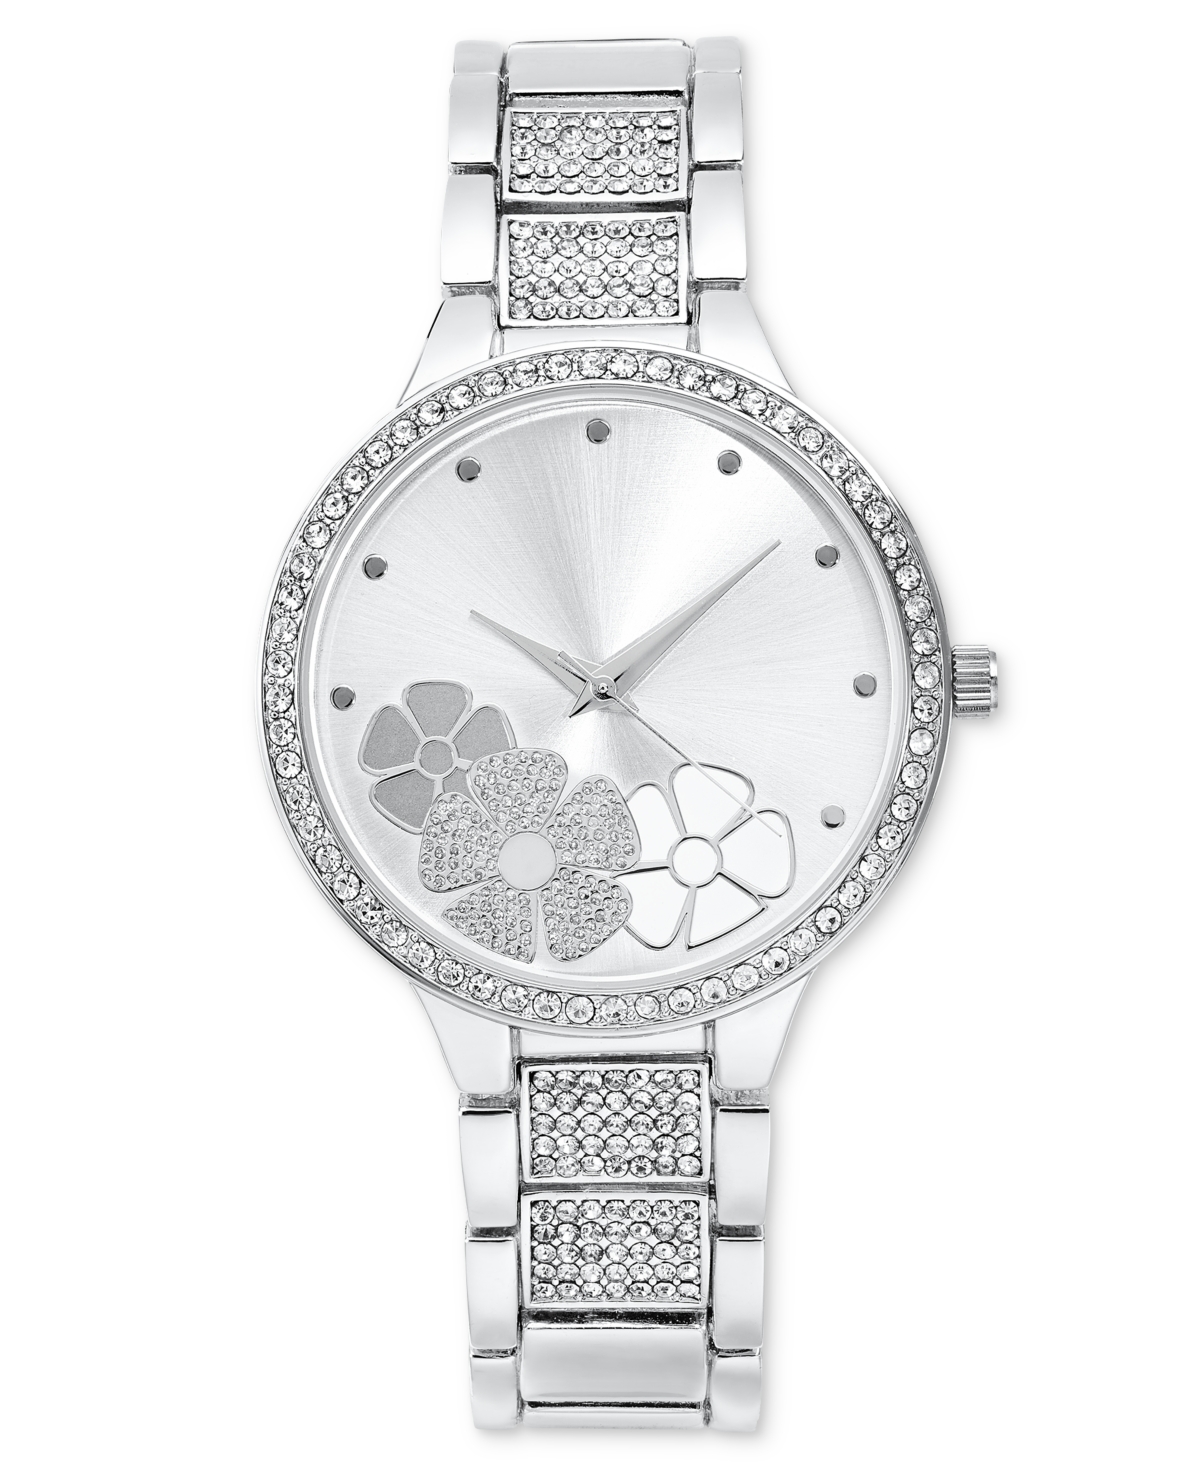 Women's Silver-Tone Bracelet Watch 37mm, Created for Macy's - Silver